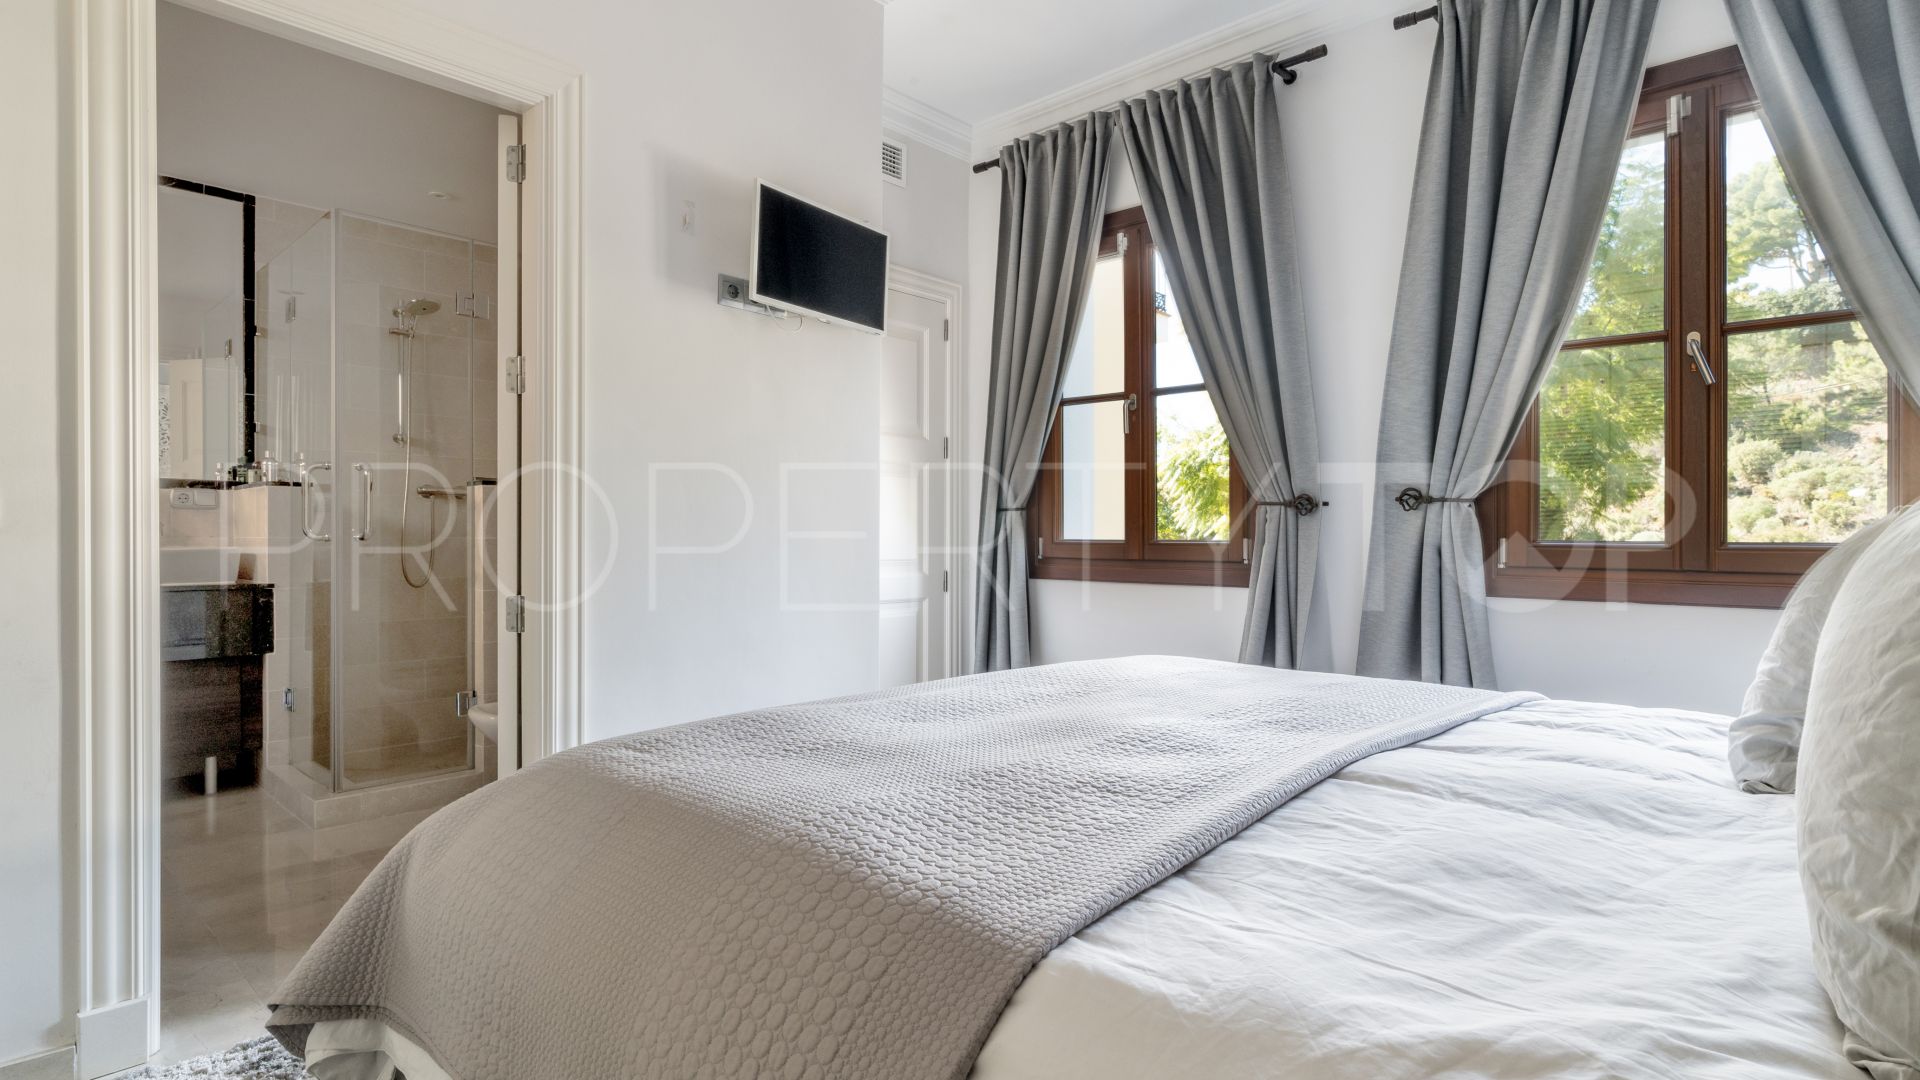 7 bedrooms villa in El Madroñal for sale